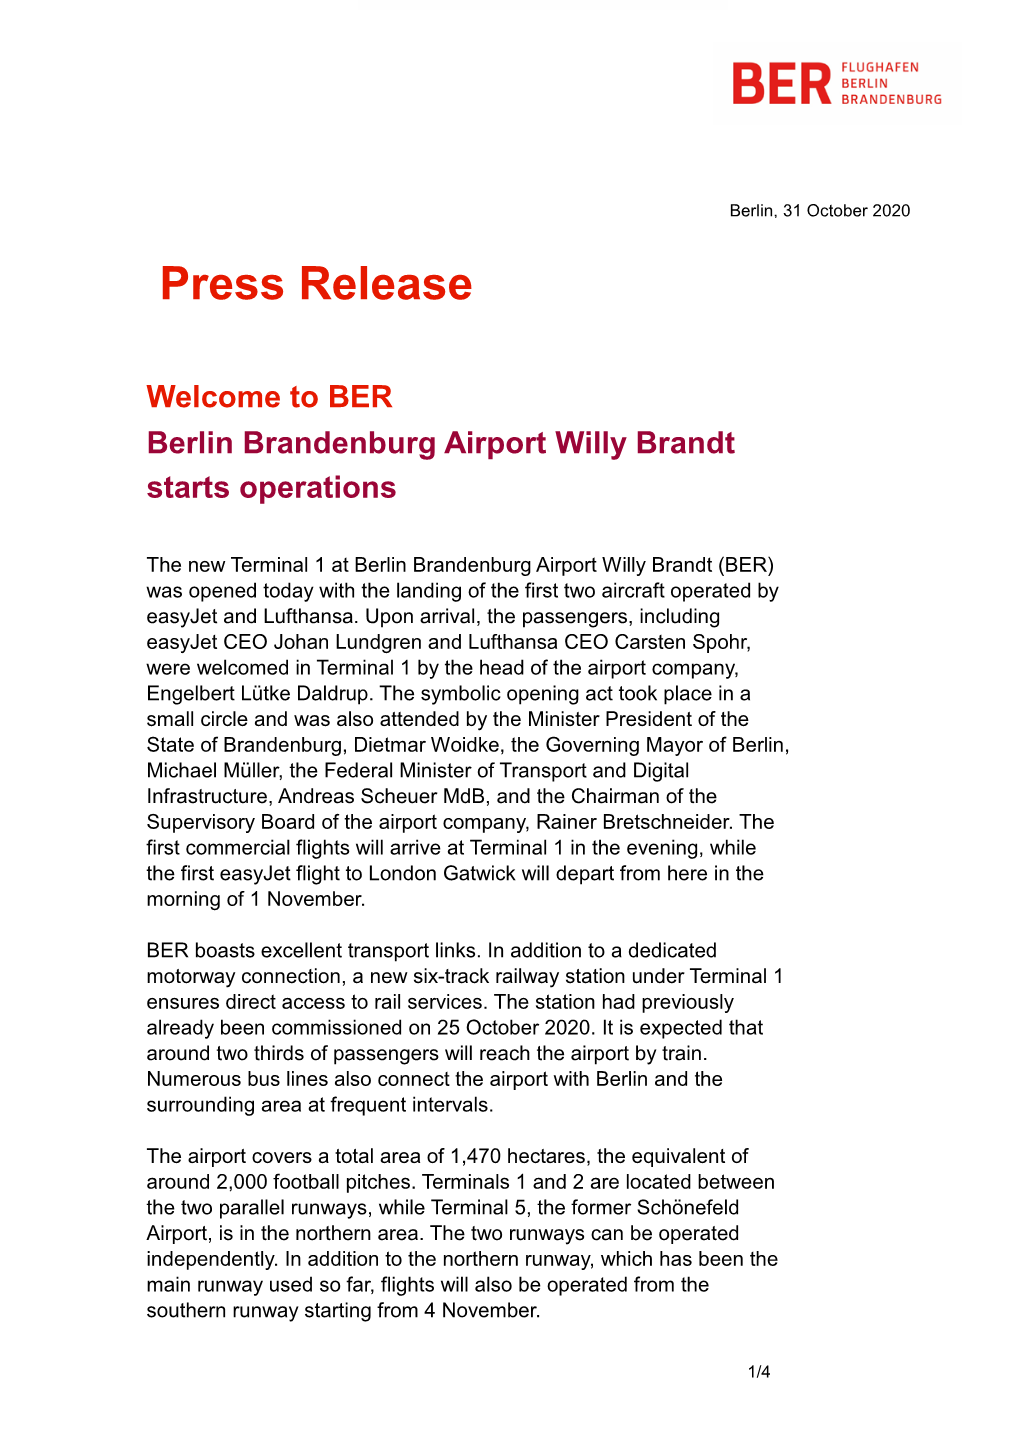 Press Release Welcome to BER Berlin